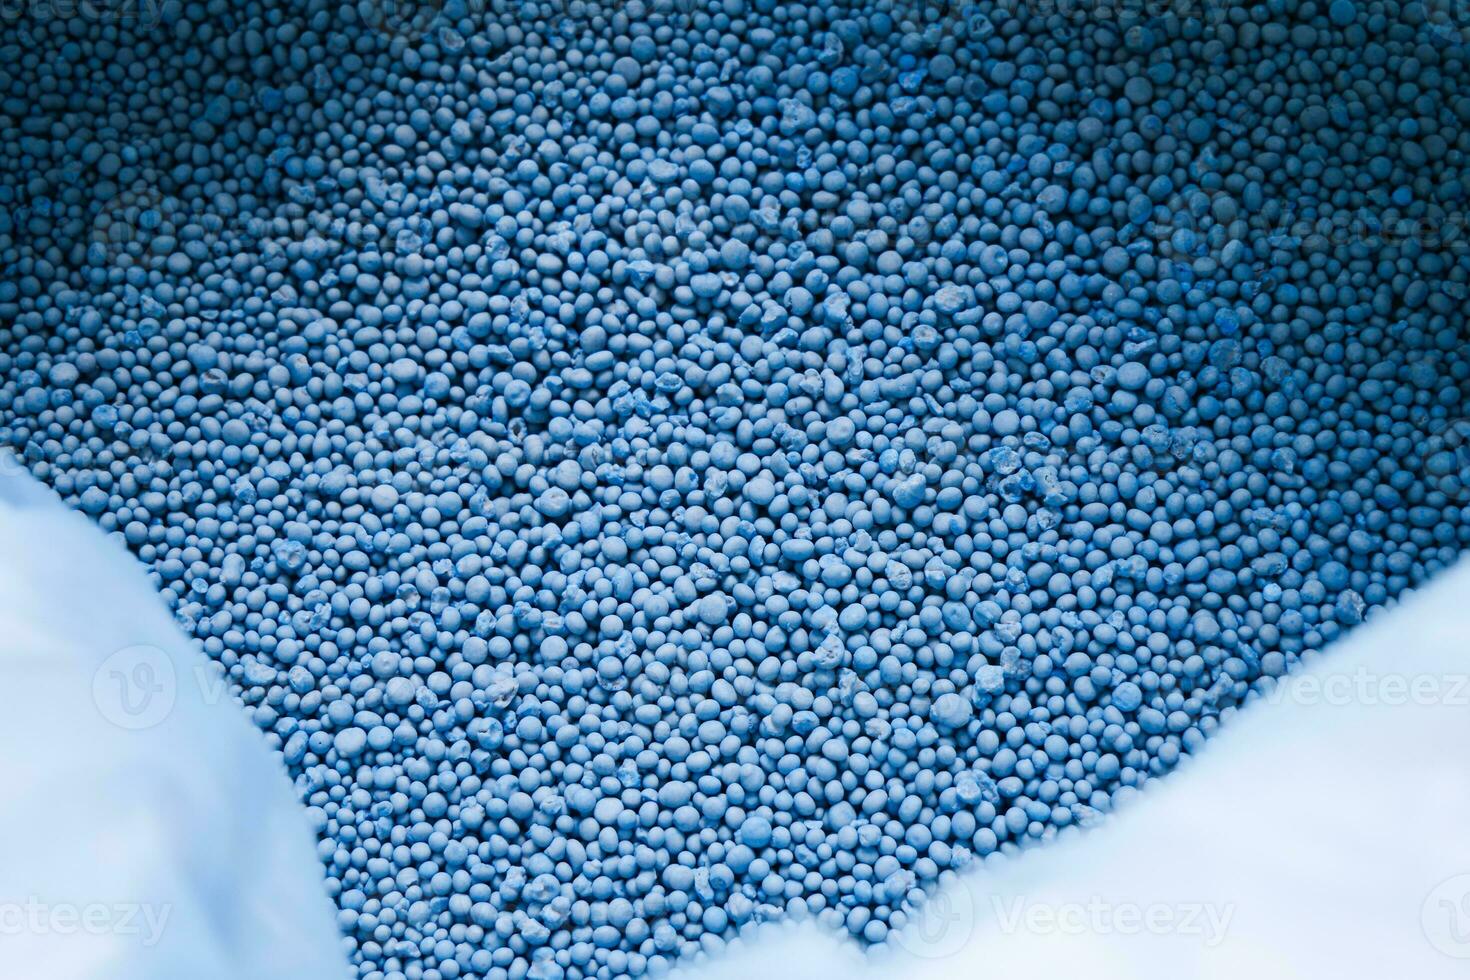 químico fertilizante pellets Listo para utilizar en agrícola parcelas, fórmula npk 15-15-15 para decorando proyectos foto